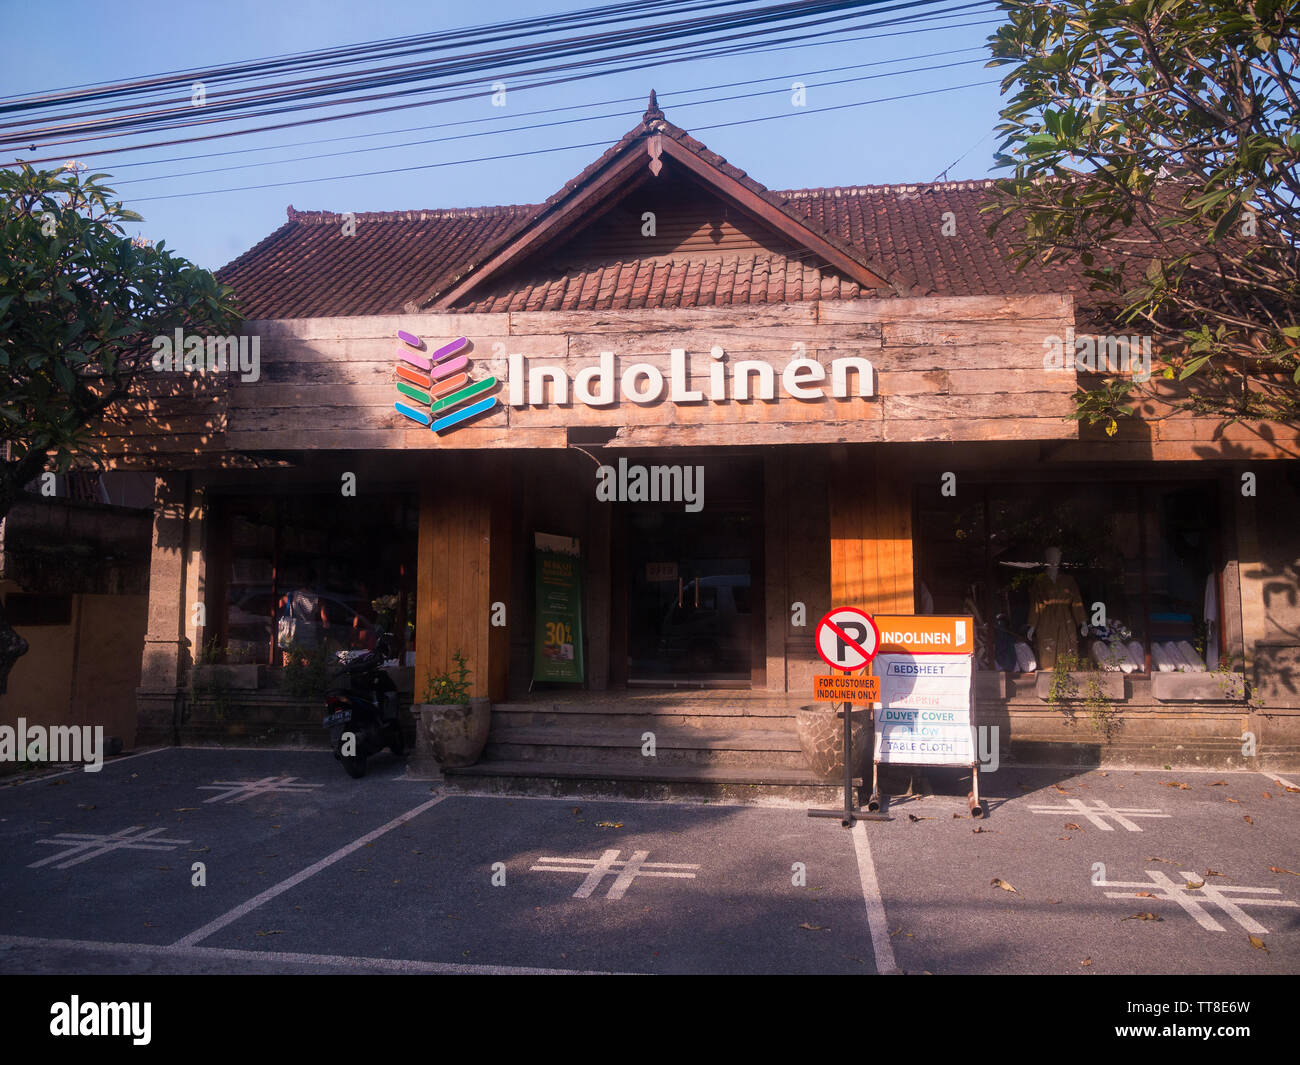 Vista di un negozio IndoLinen a Bali, in Indonesia che è specializzato nella vendita di prodotti di biancheria da letto quali lenzuola, cuscini e tovaglie. Foto Stock